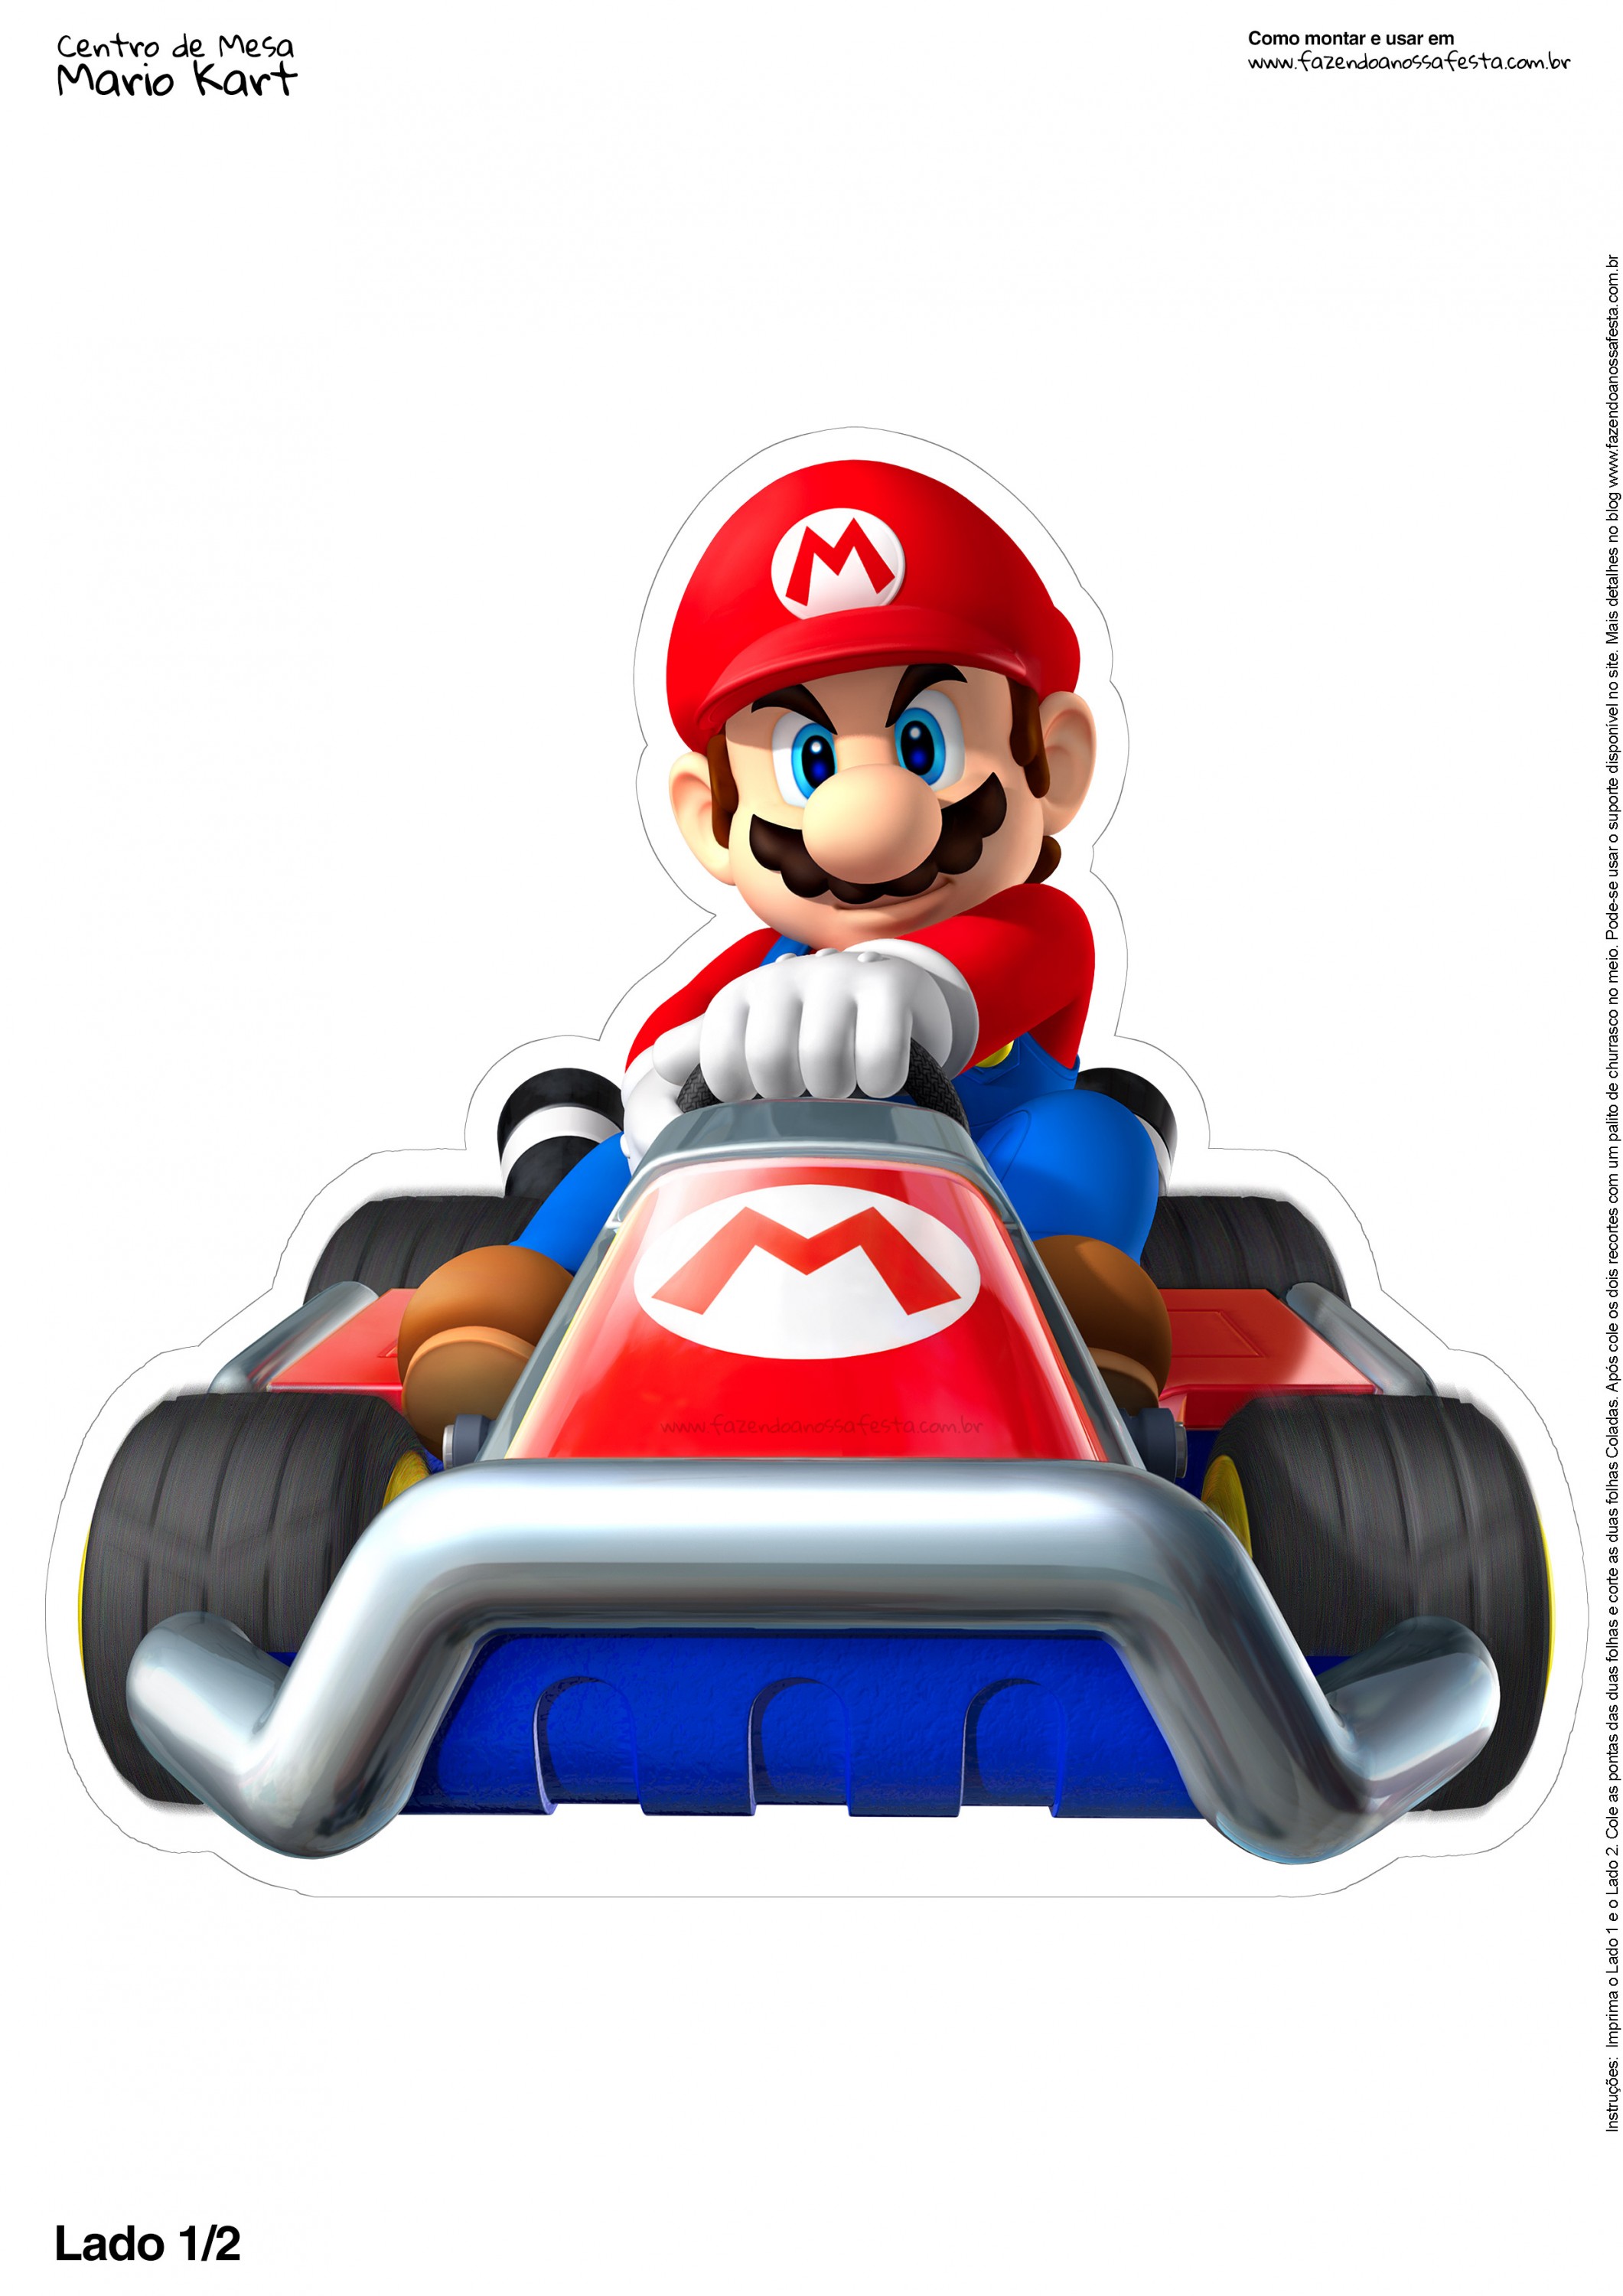 Centro de Mesa Mario Kart 2 2